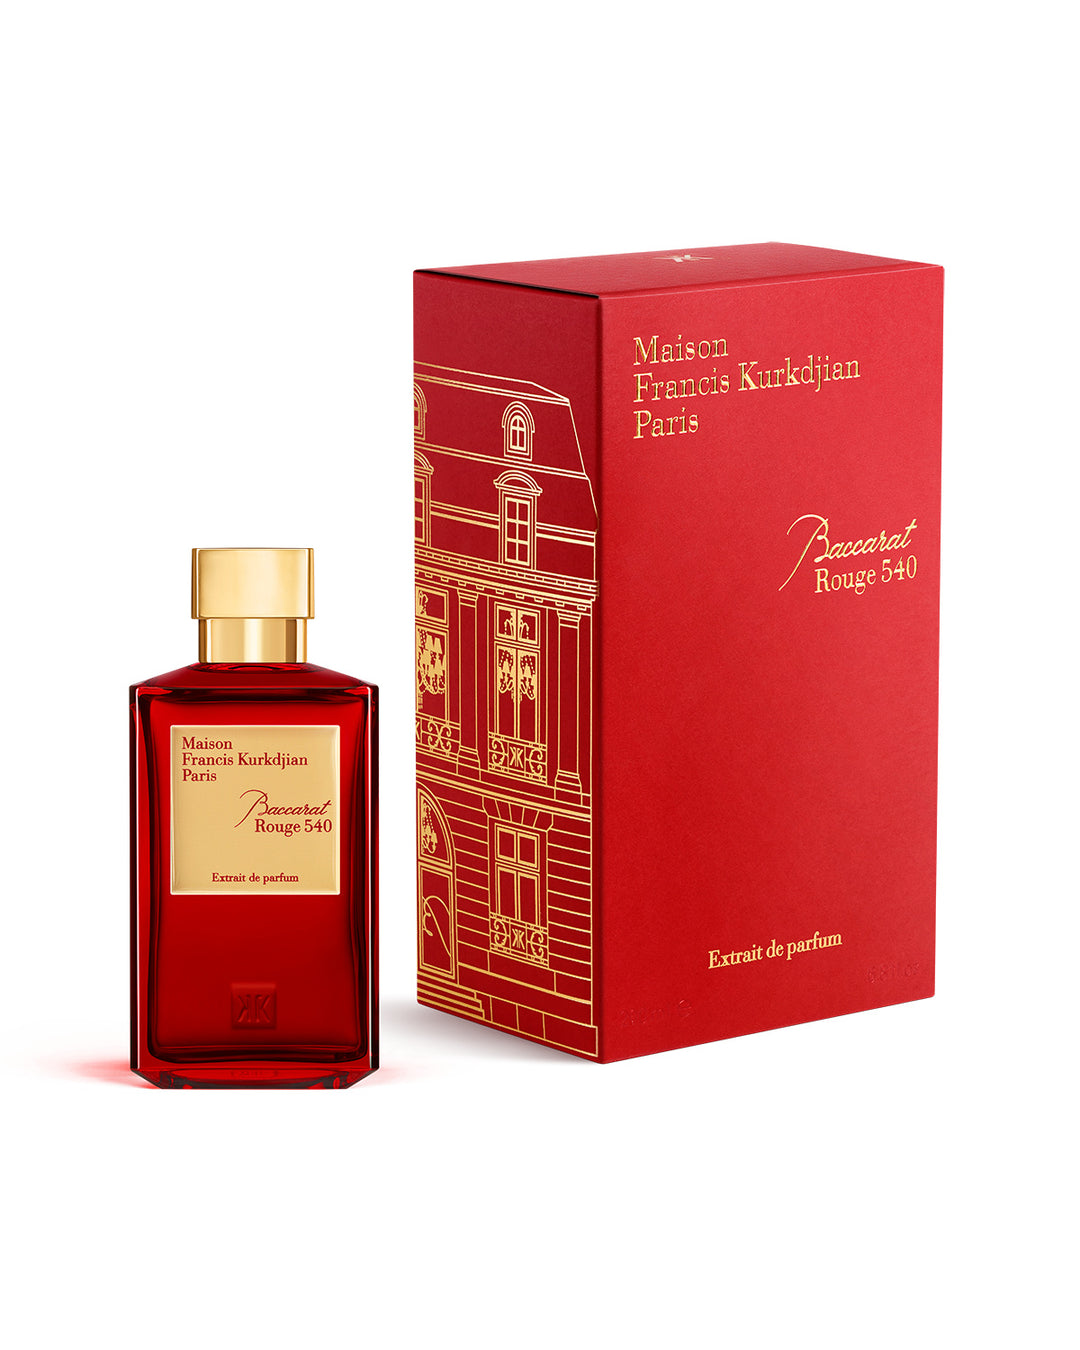 Baccarat Rouge 540 Extrait de Parfum - Oversized Collection